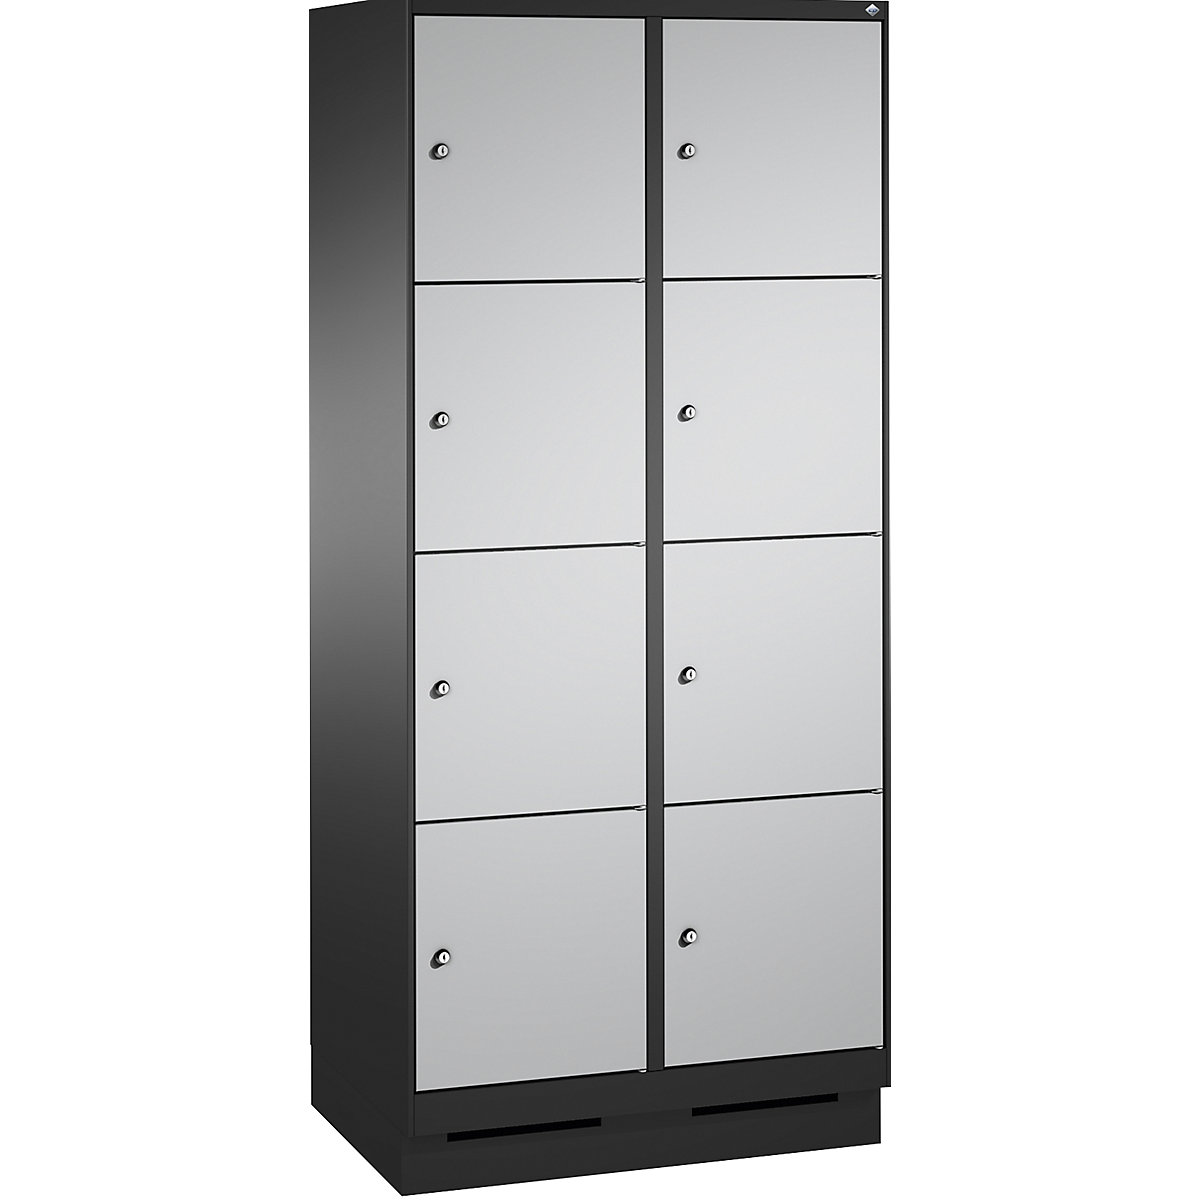 Armoire à casiers sur socle EVOLO – C+P, 2 compartiments, 4 casiers chacun, largeur compartiments 400 mm, gris noir / aluminium-5